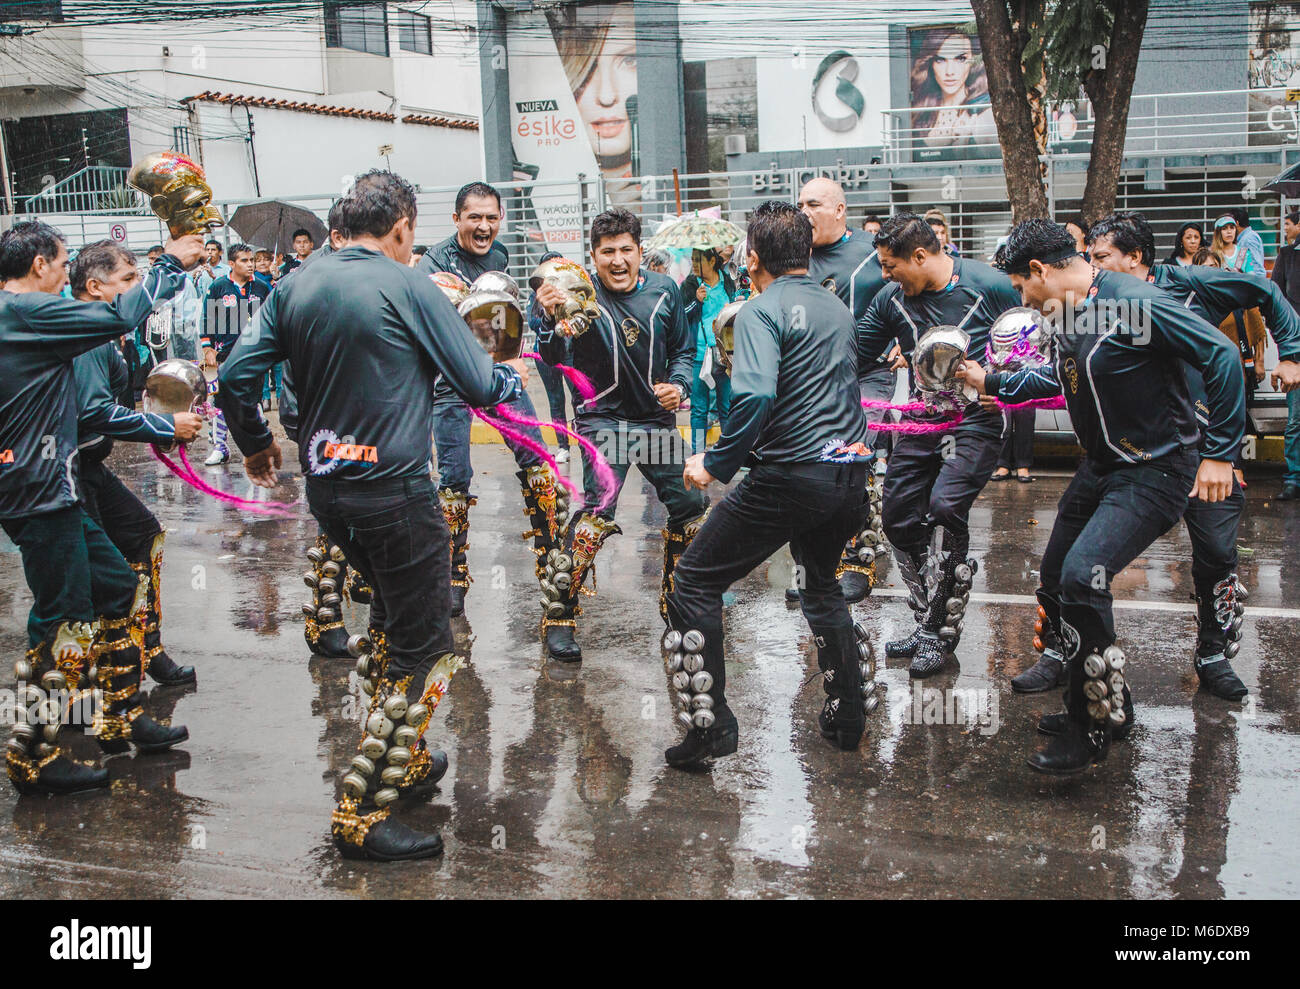 Cochabamba Bolivia - Febbraio 2018: Caporales gruppi di ballerini sfilano per le strade piovose in un pre-sfilata di carnevale Foto Stock